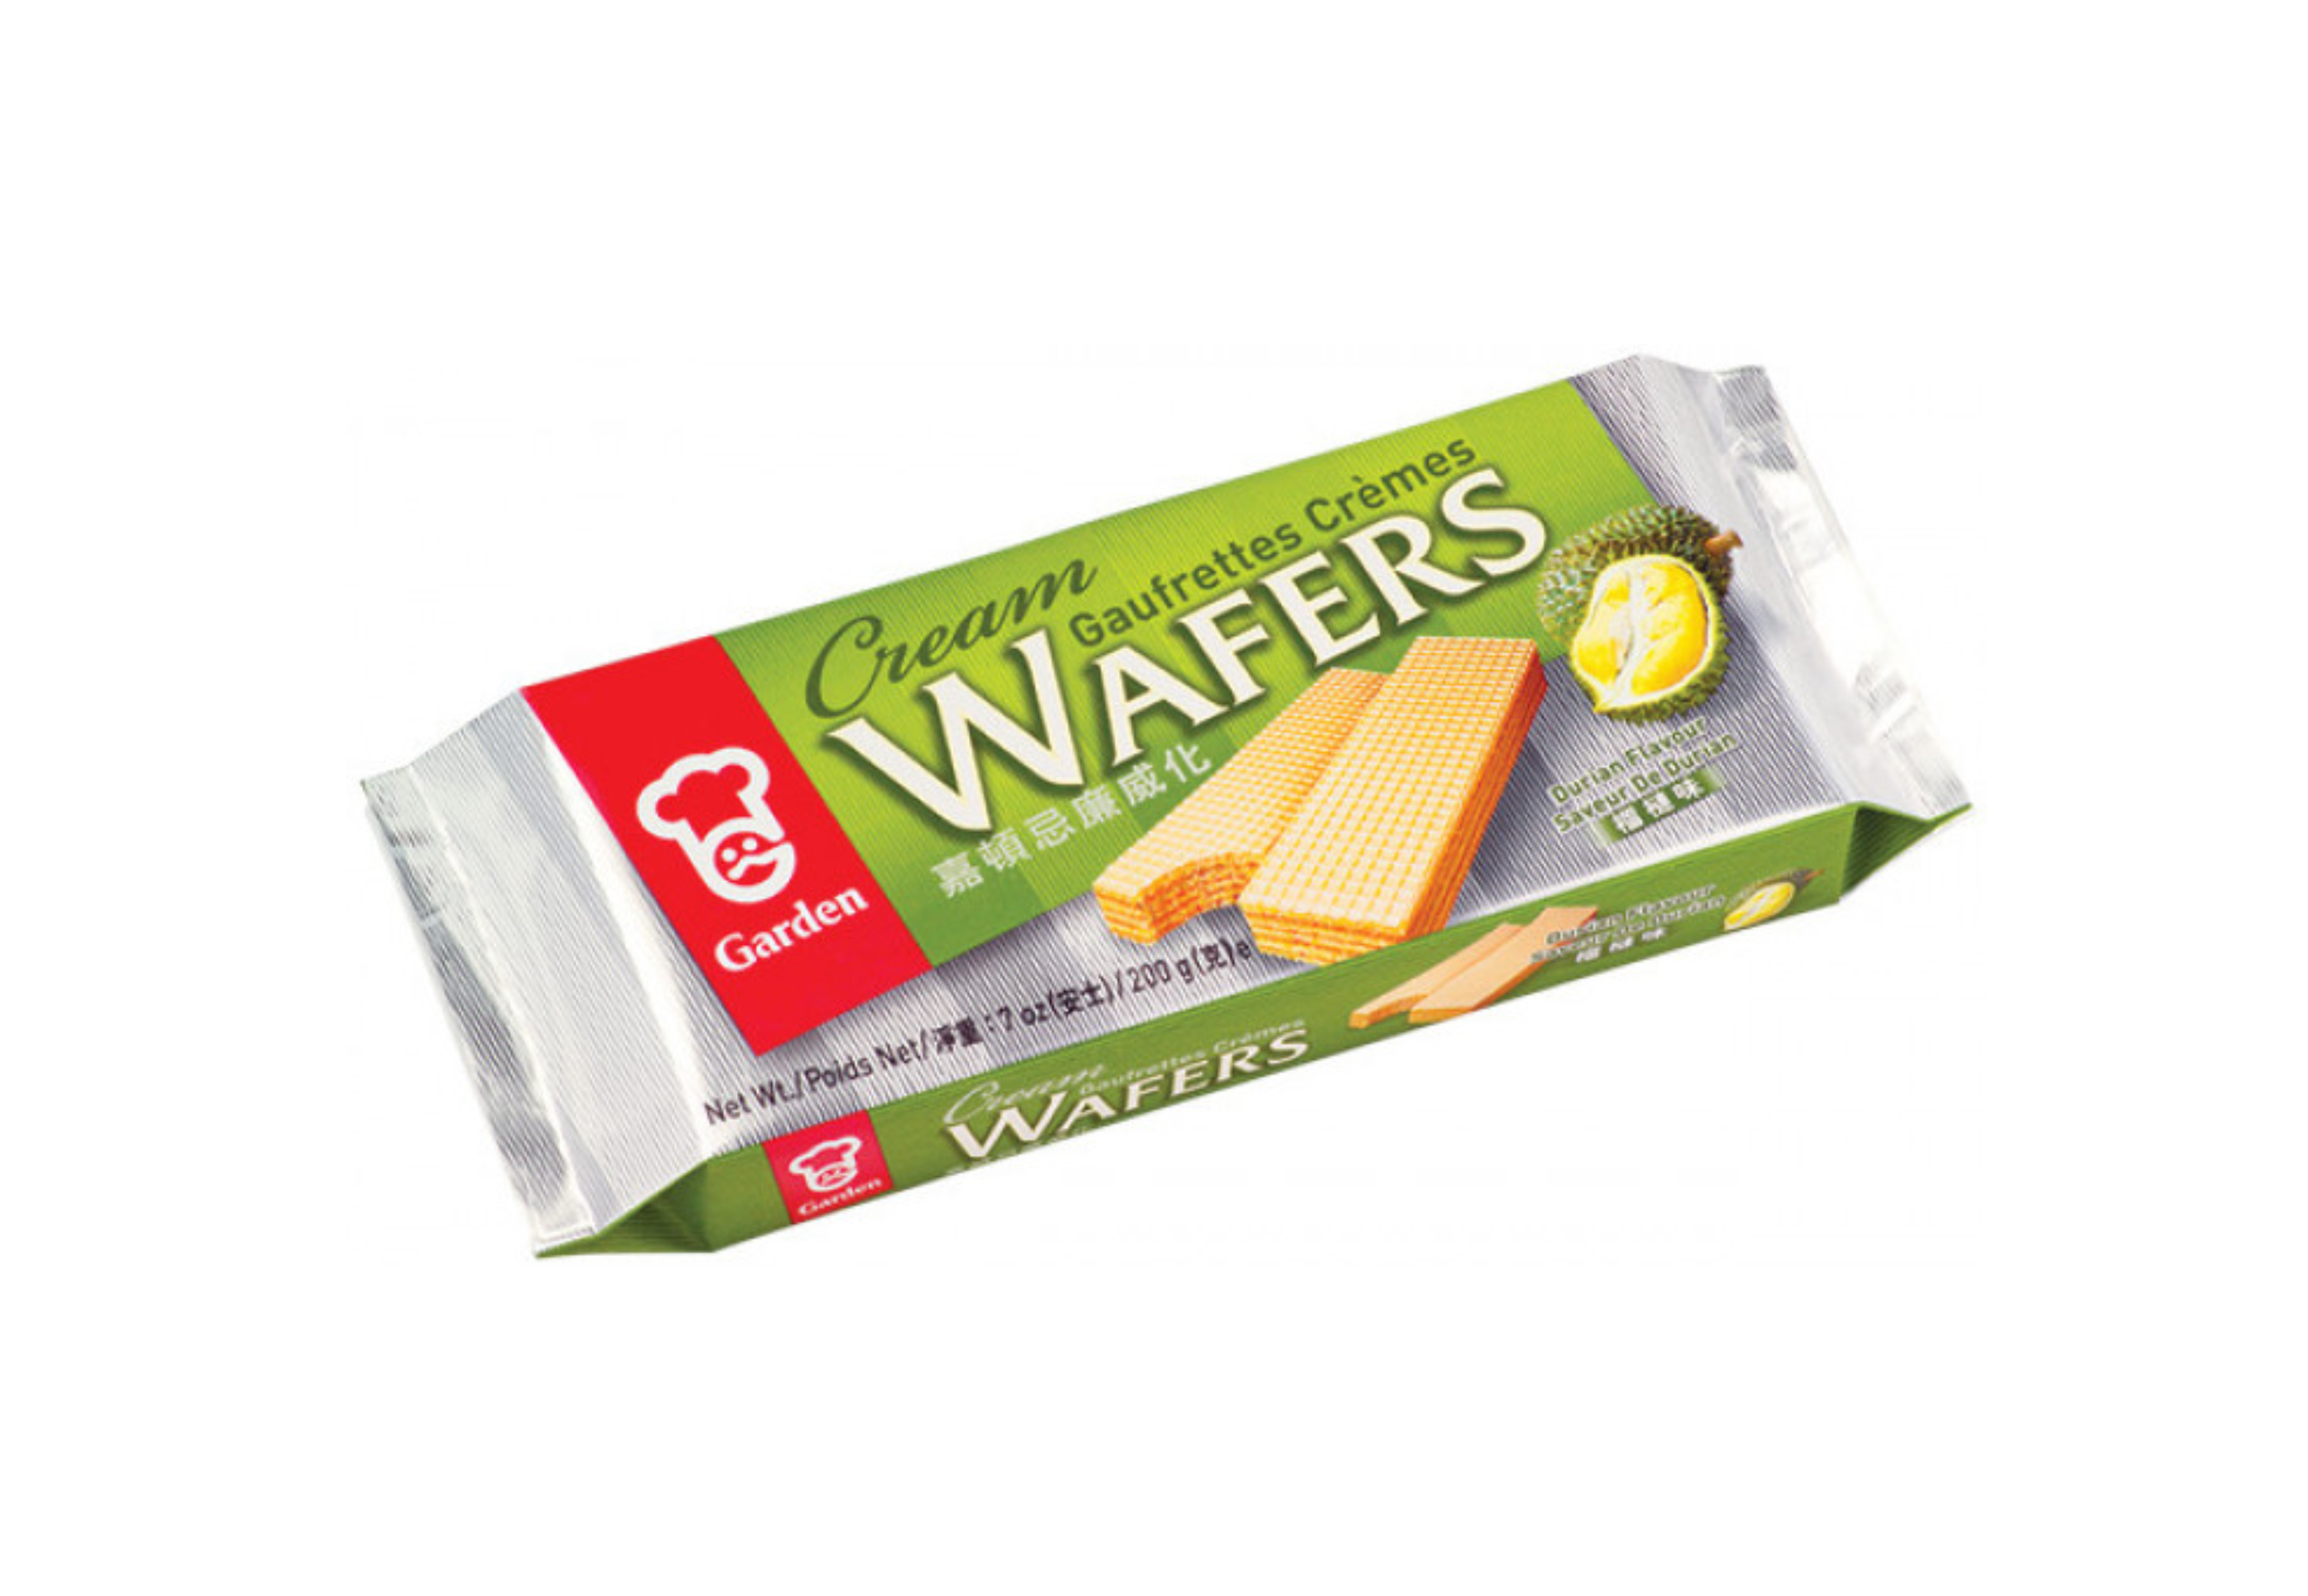 Garden Cream wafers durian flavour